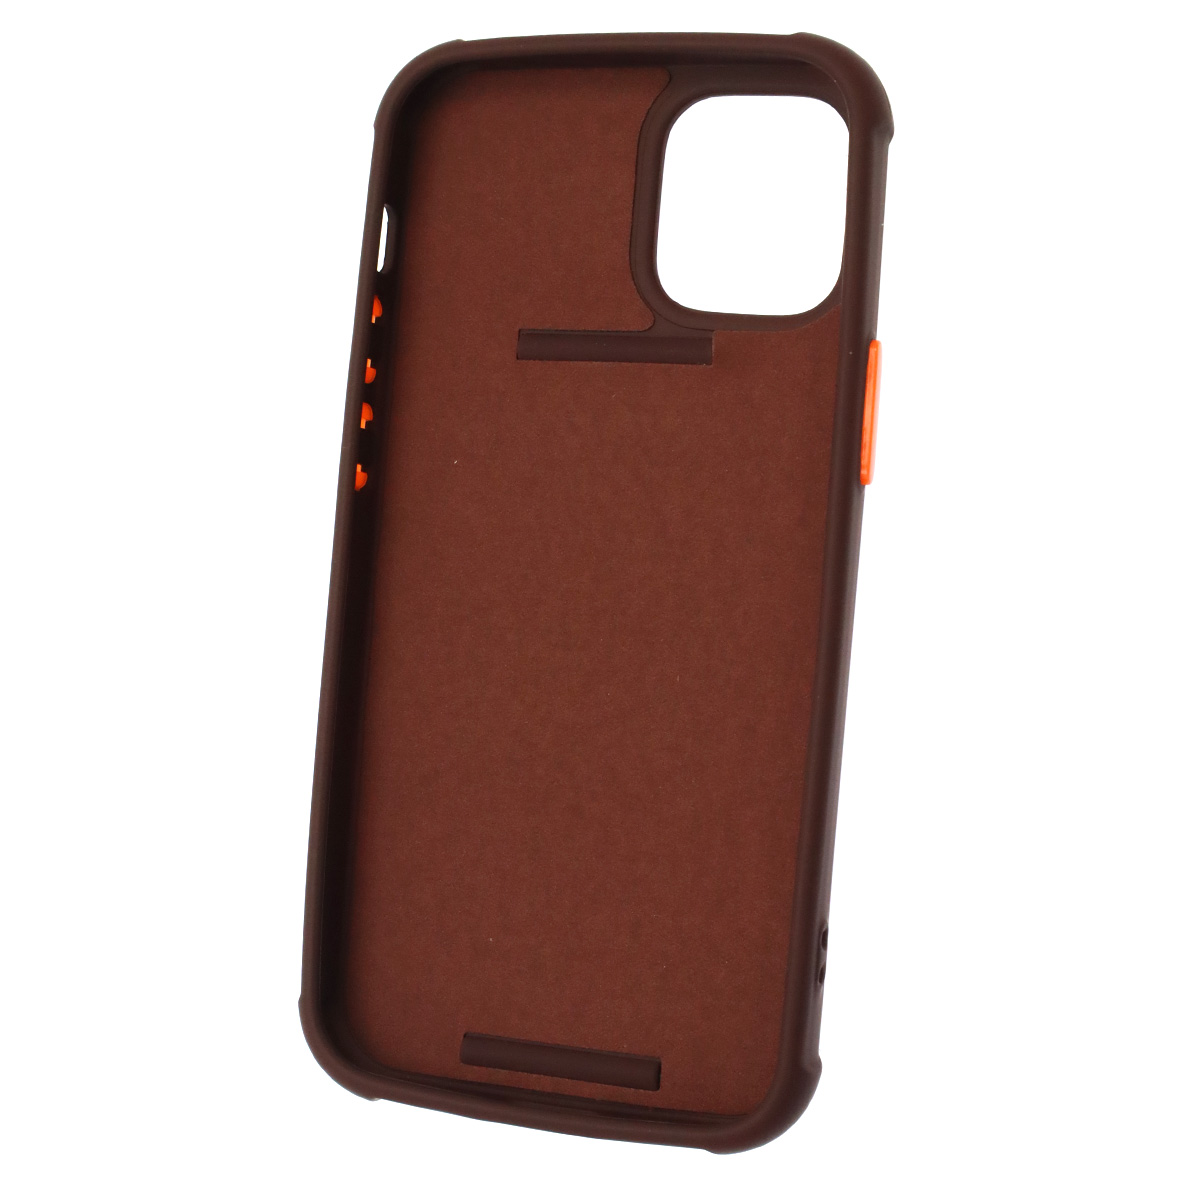 Чехол накладка LADDER NANO для APPLE iPhone 12 mini (5.4), силикон, держатель, цвет шоколадный